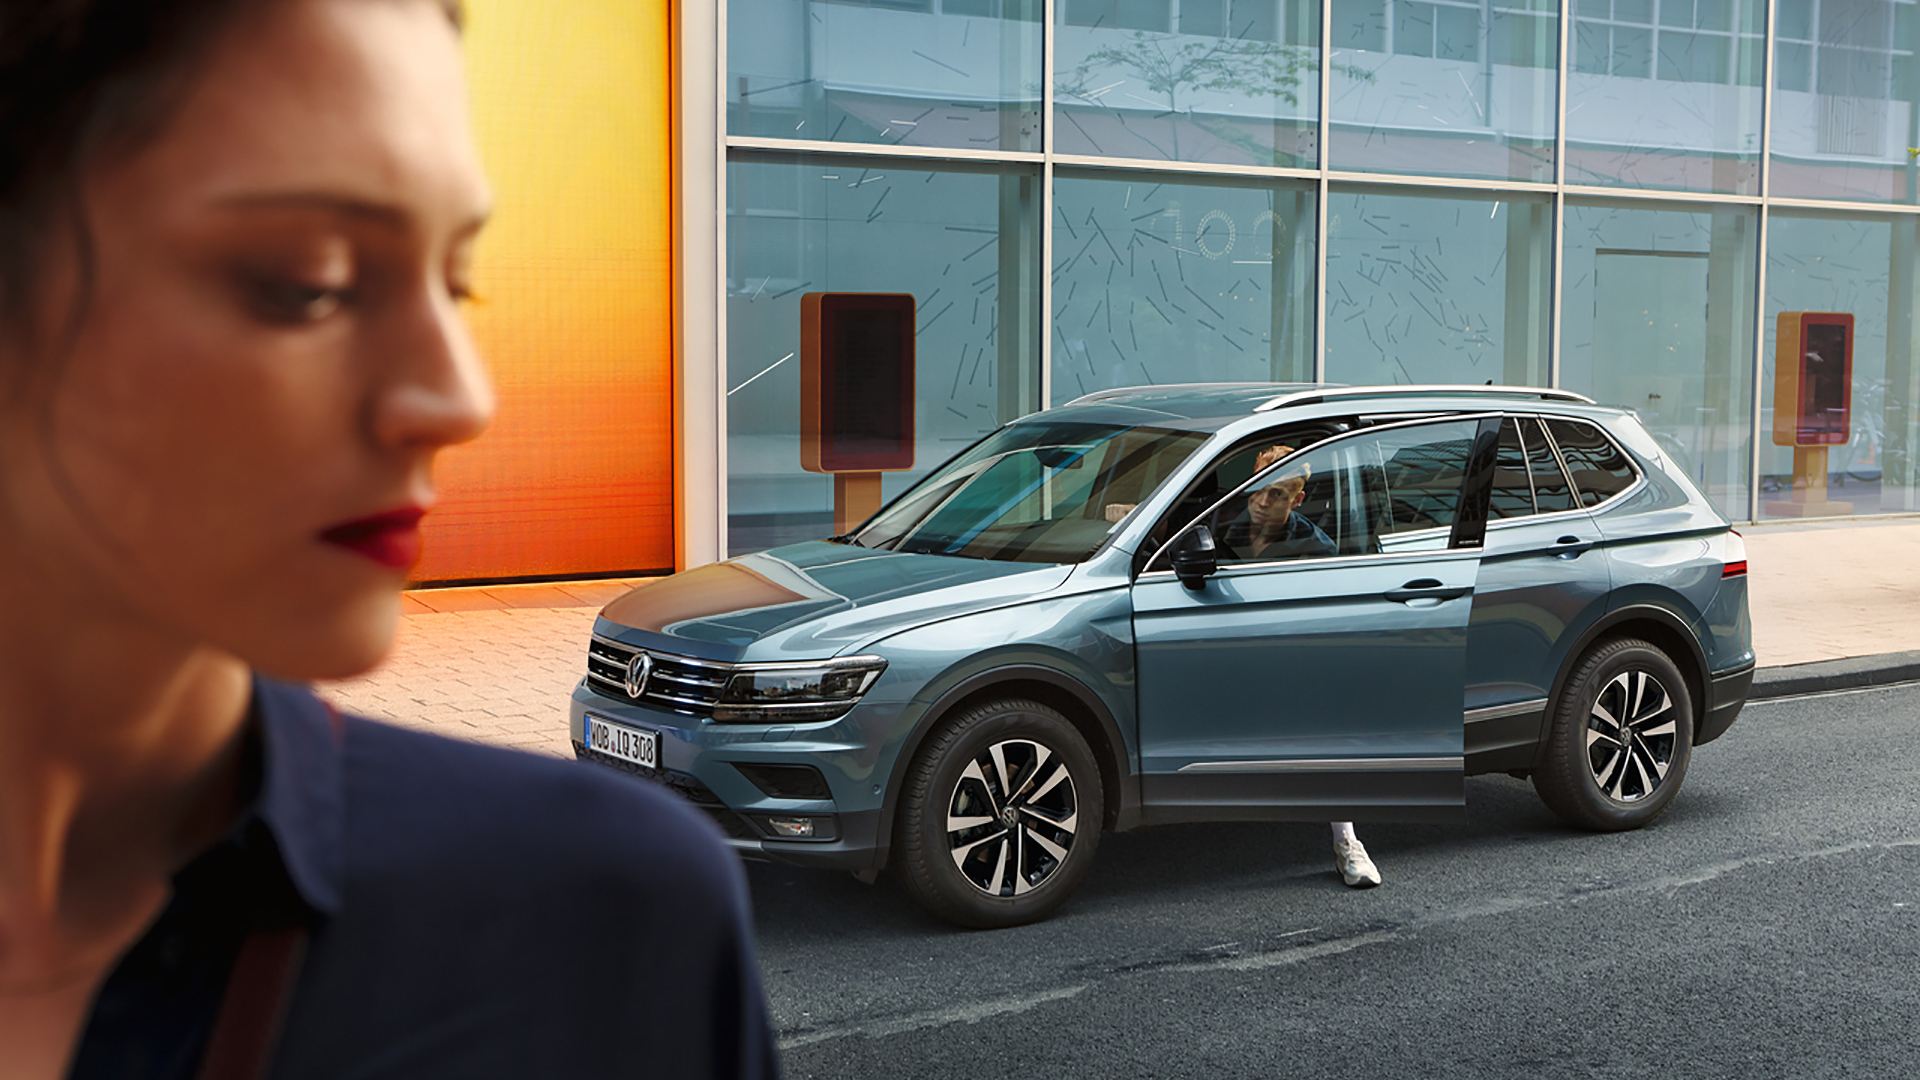 Uomo esce dalla sua Volkswagen Touran, in primo piano una donna vista di lato